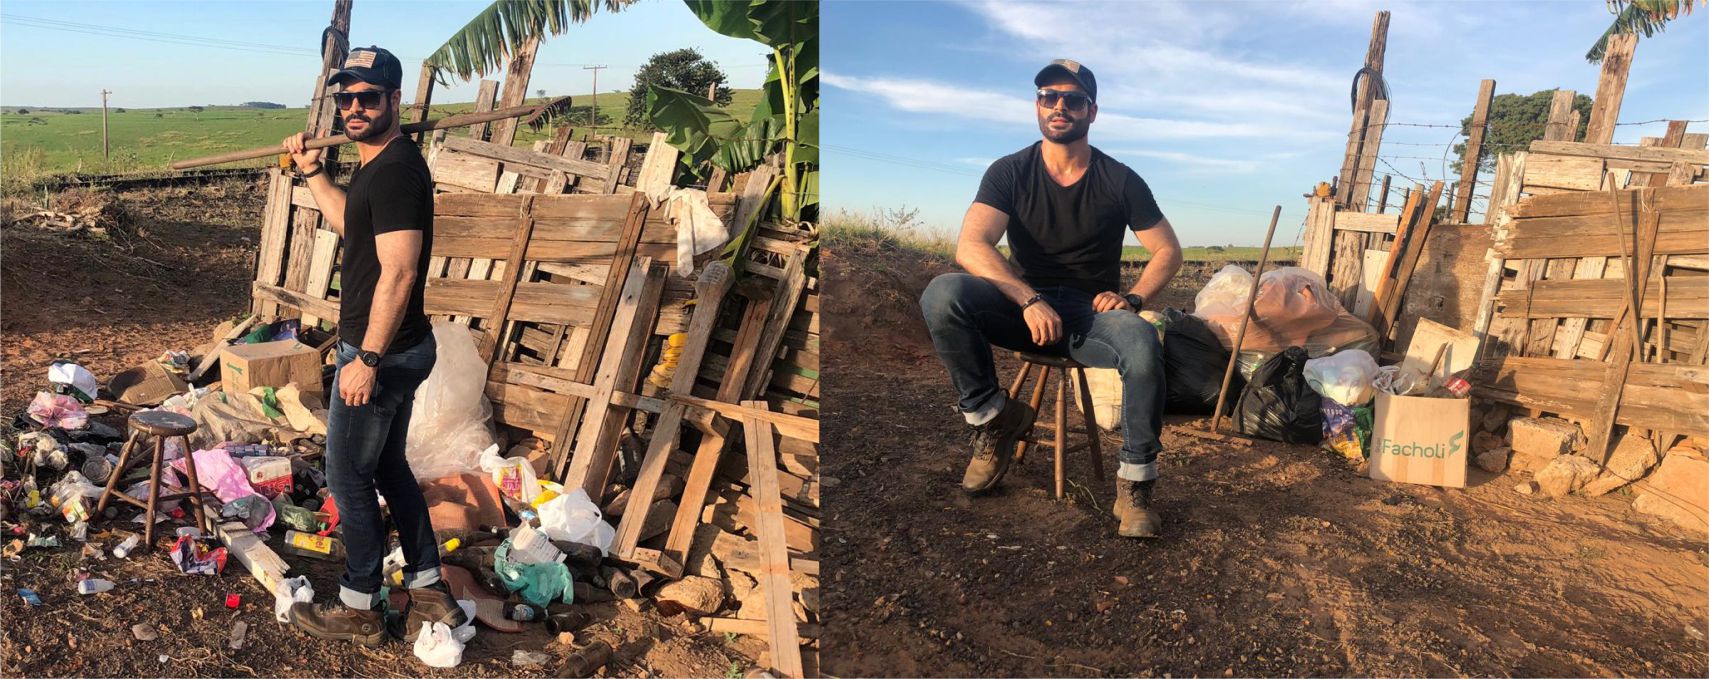 Mister Eco São Paulo 2019 participa do Desafio do Lixo